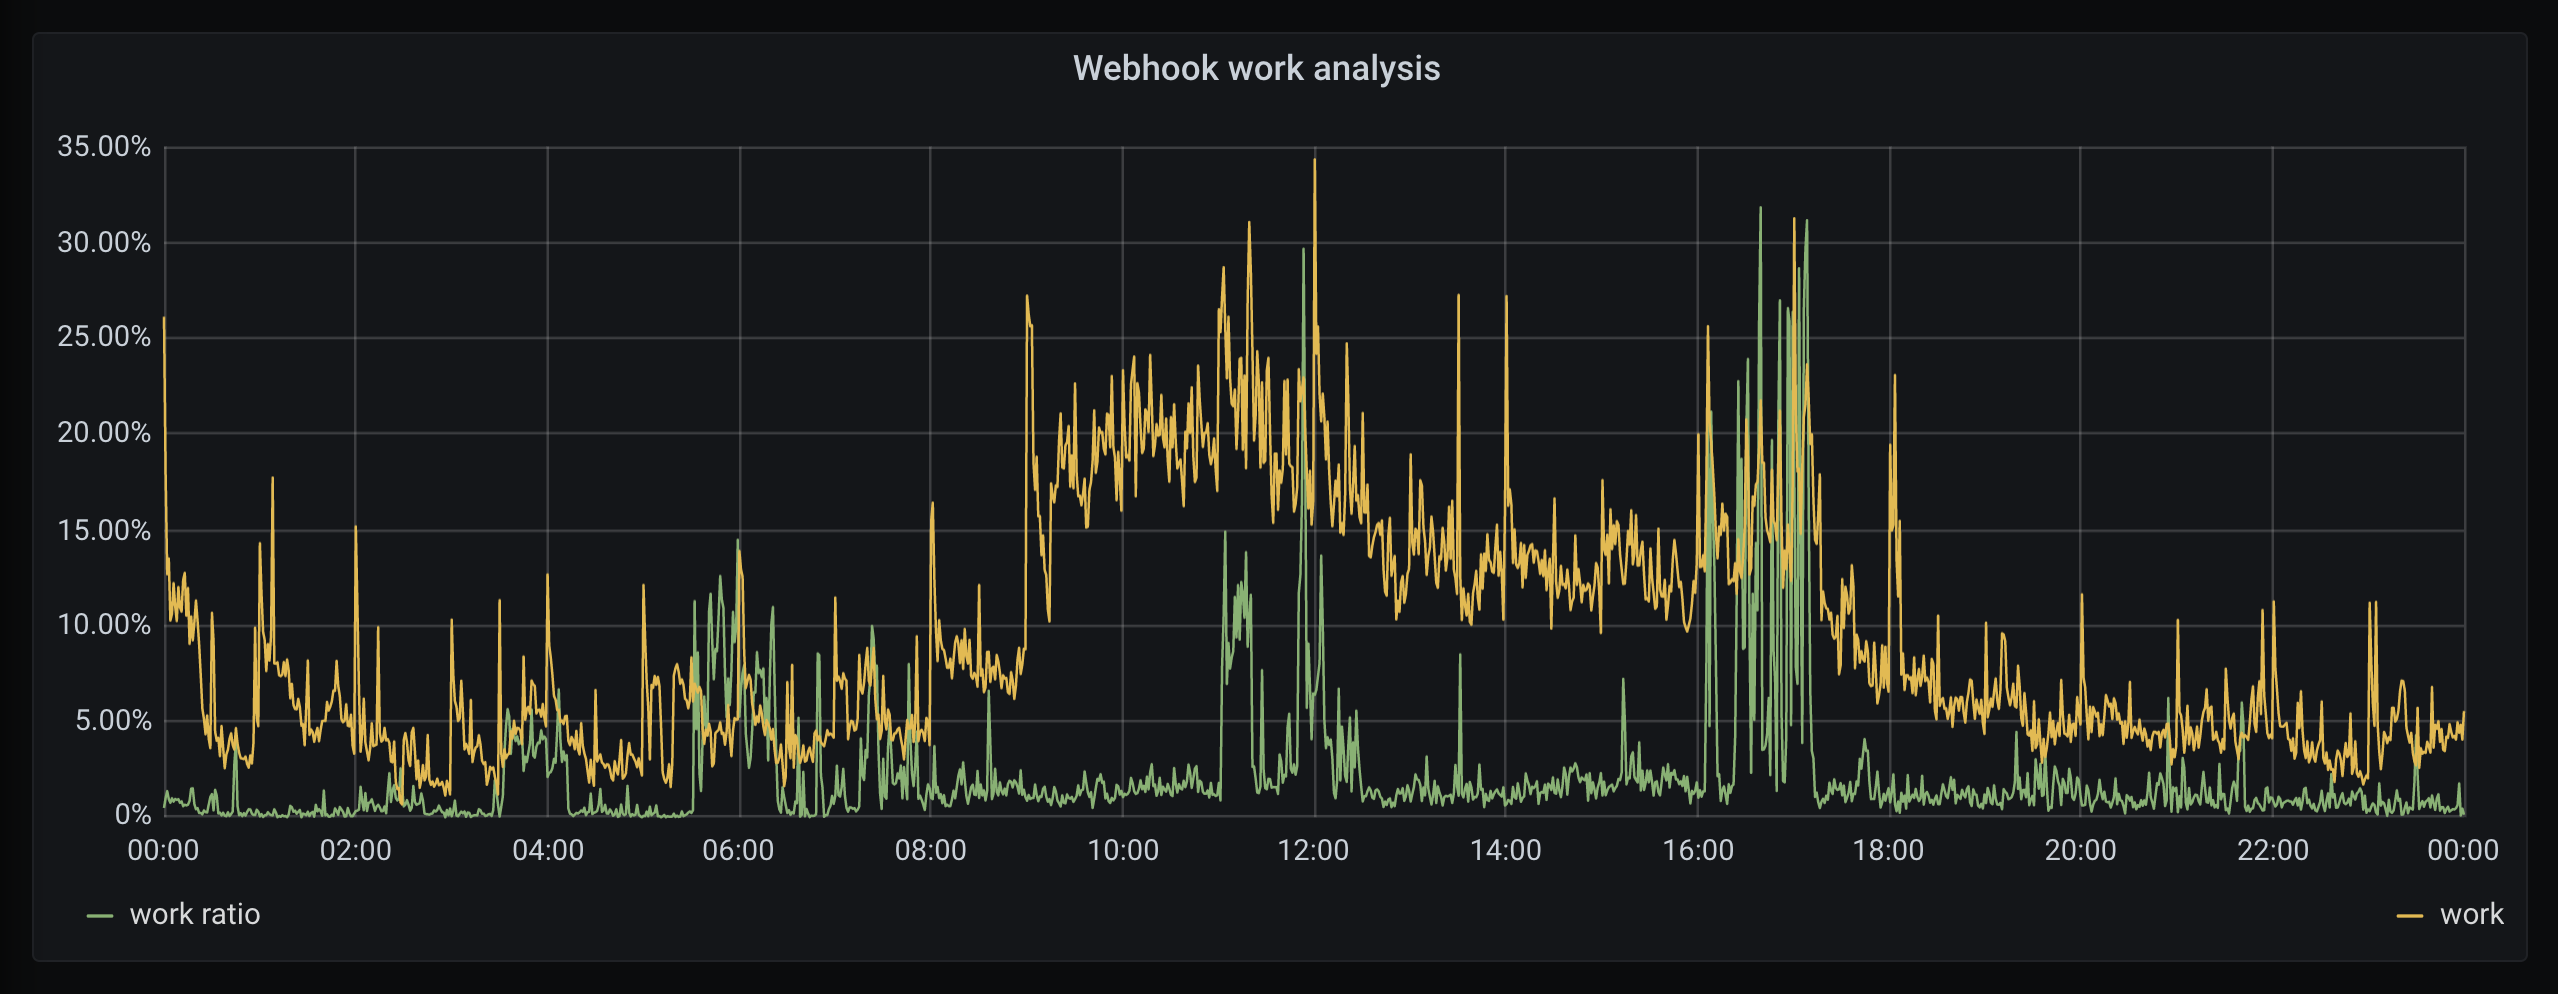 Graph of API work spent on webhooks vs. total work